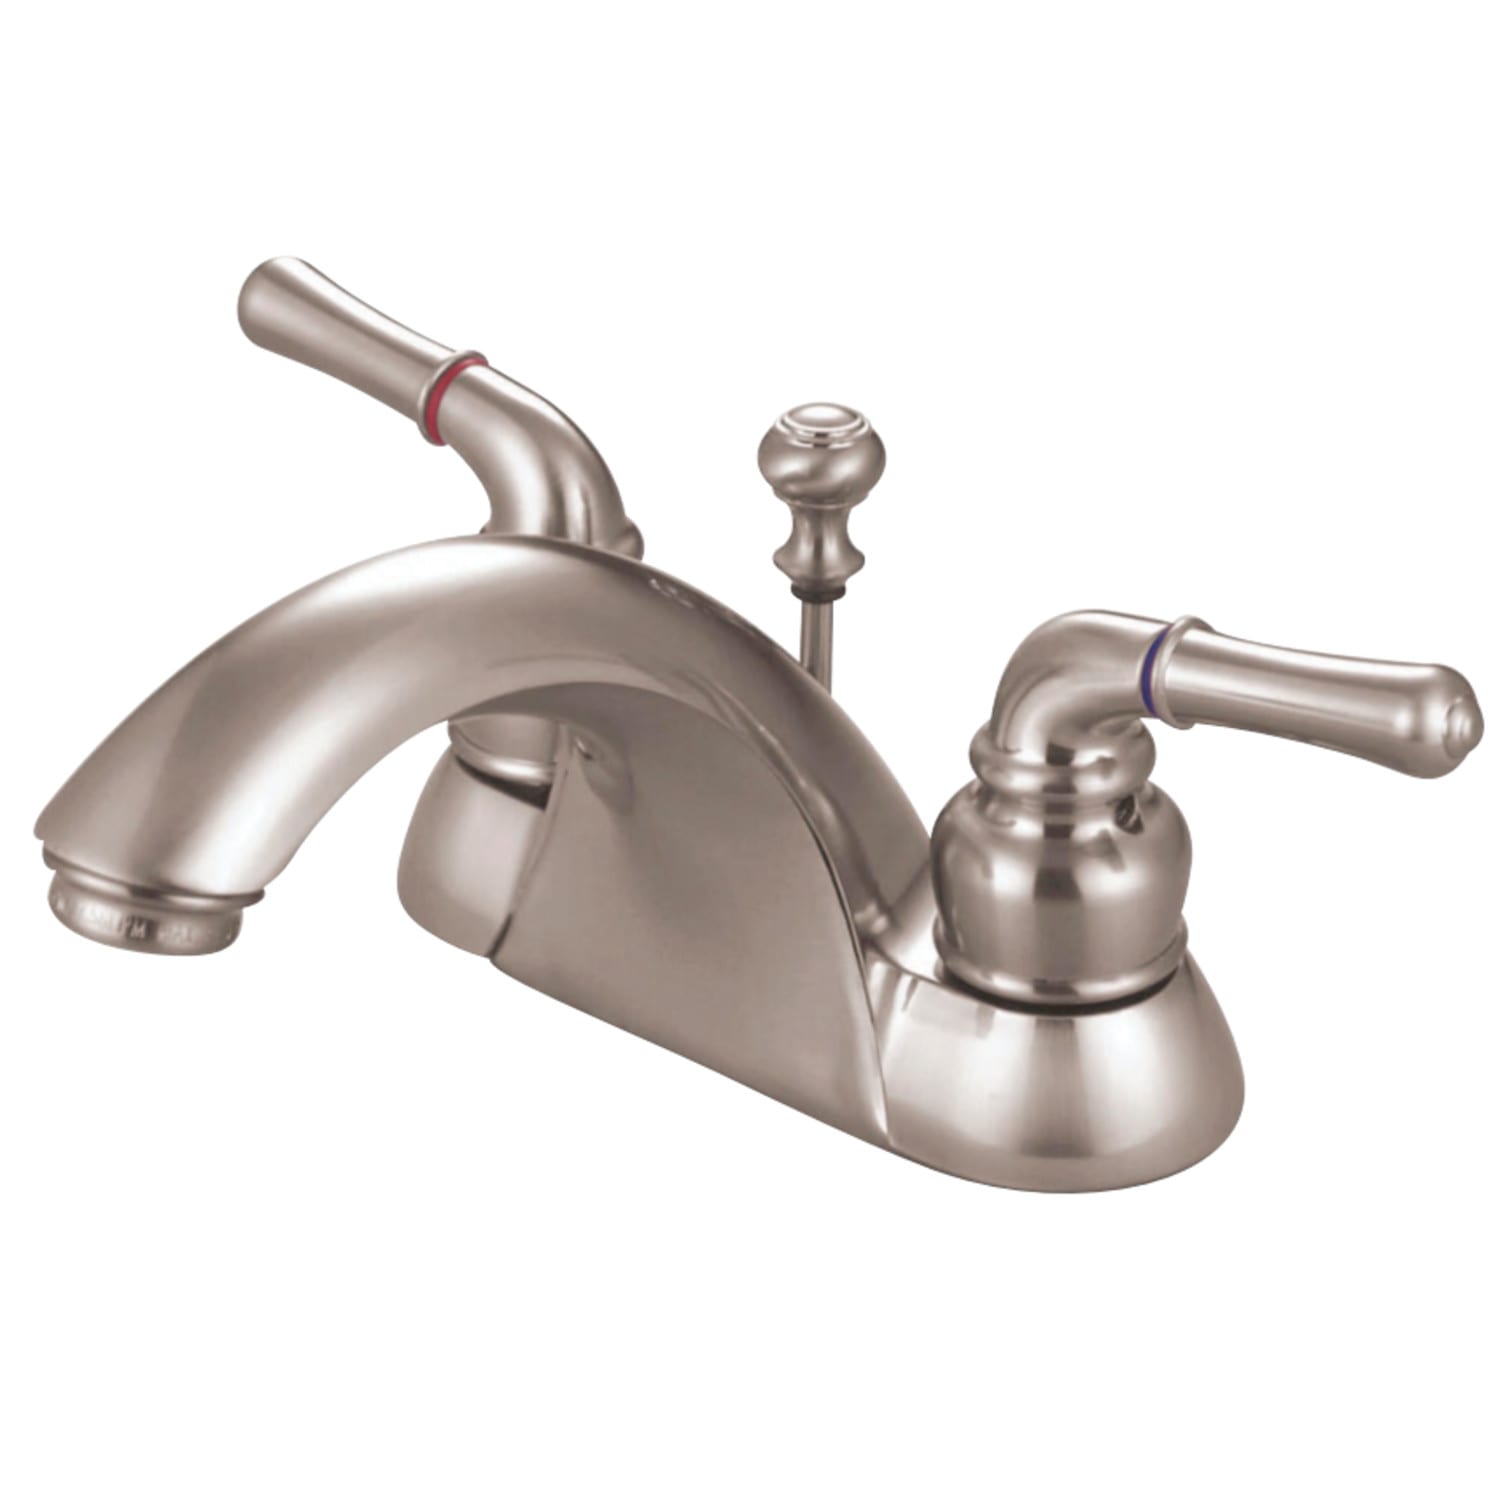 Kingston Brass Faucet Parts Diagram / Single Lever Shower Faucet Repair Part 1 Youtube : Its ...